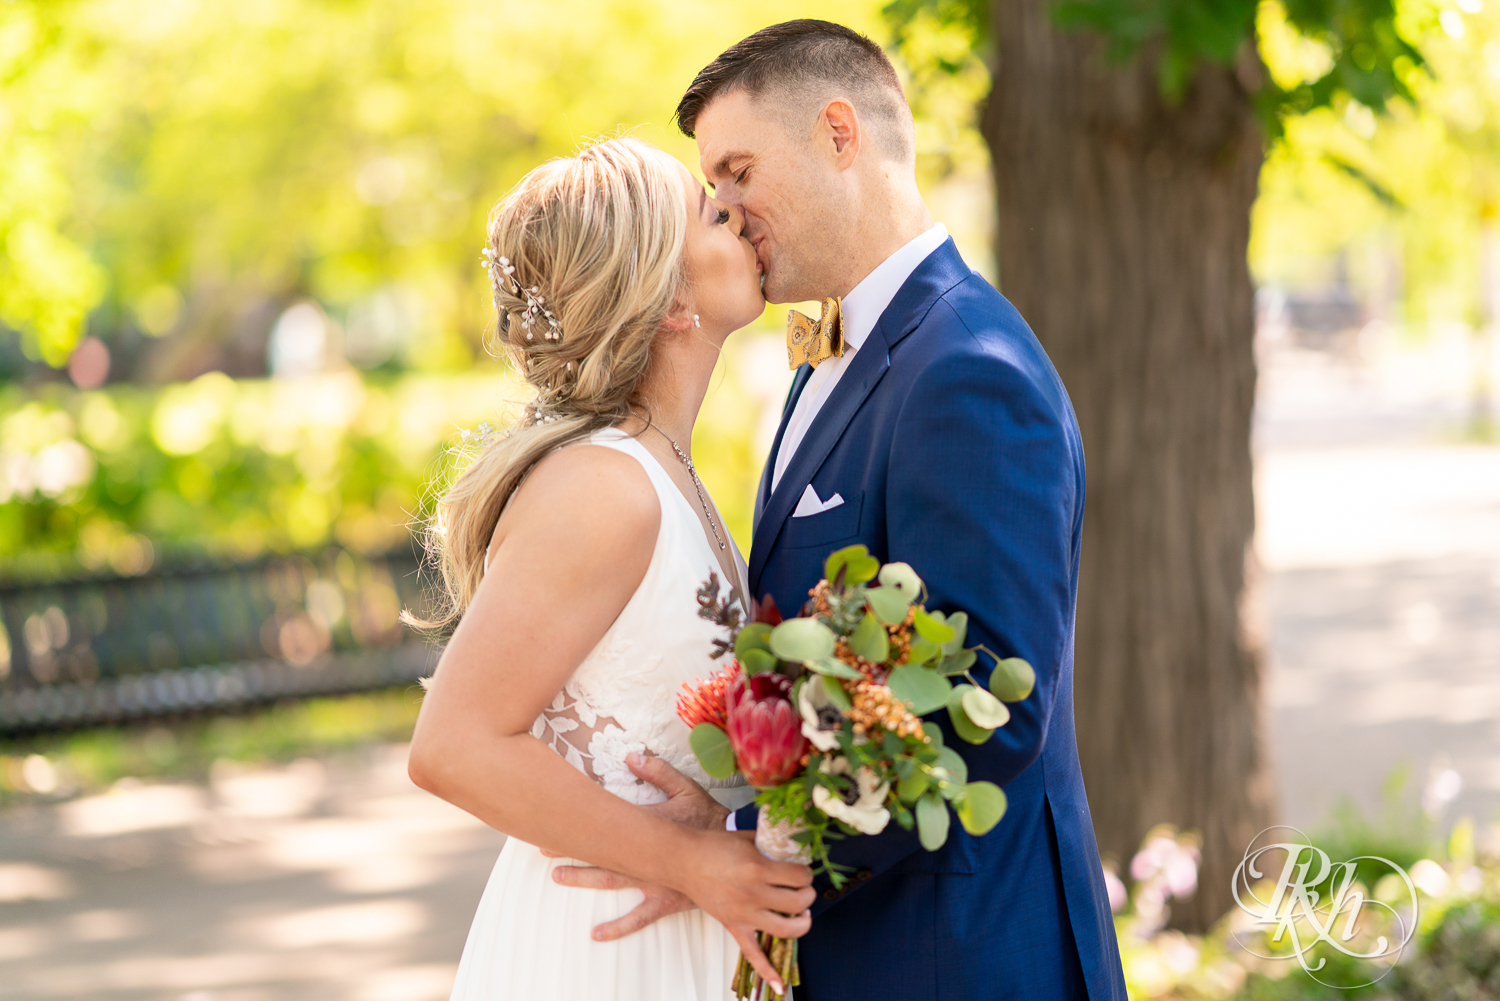 Bride and groom kiss at Irvine Park in Saint Paul, Minnesota.